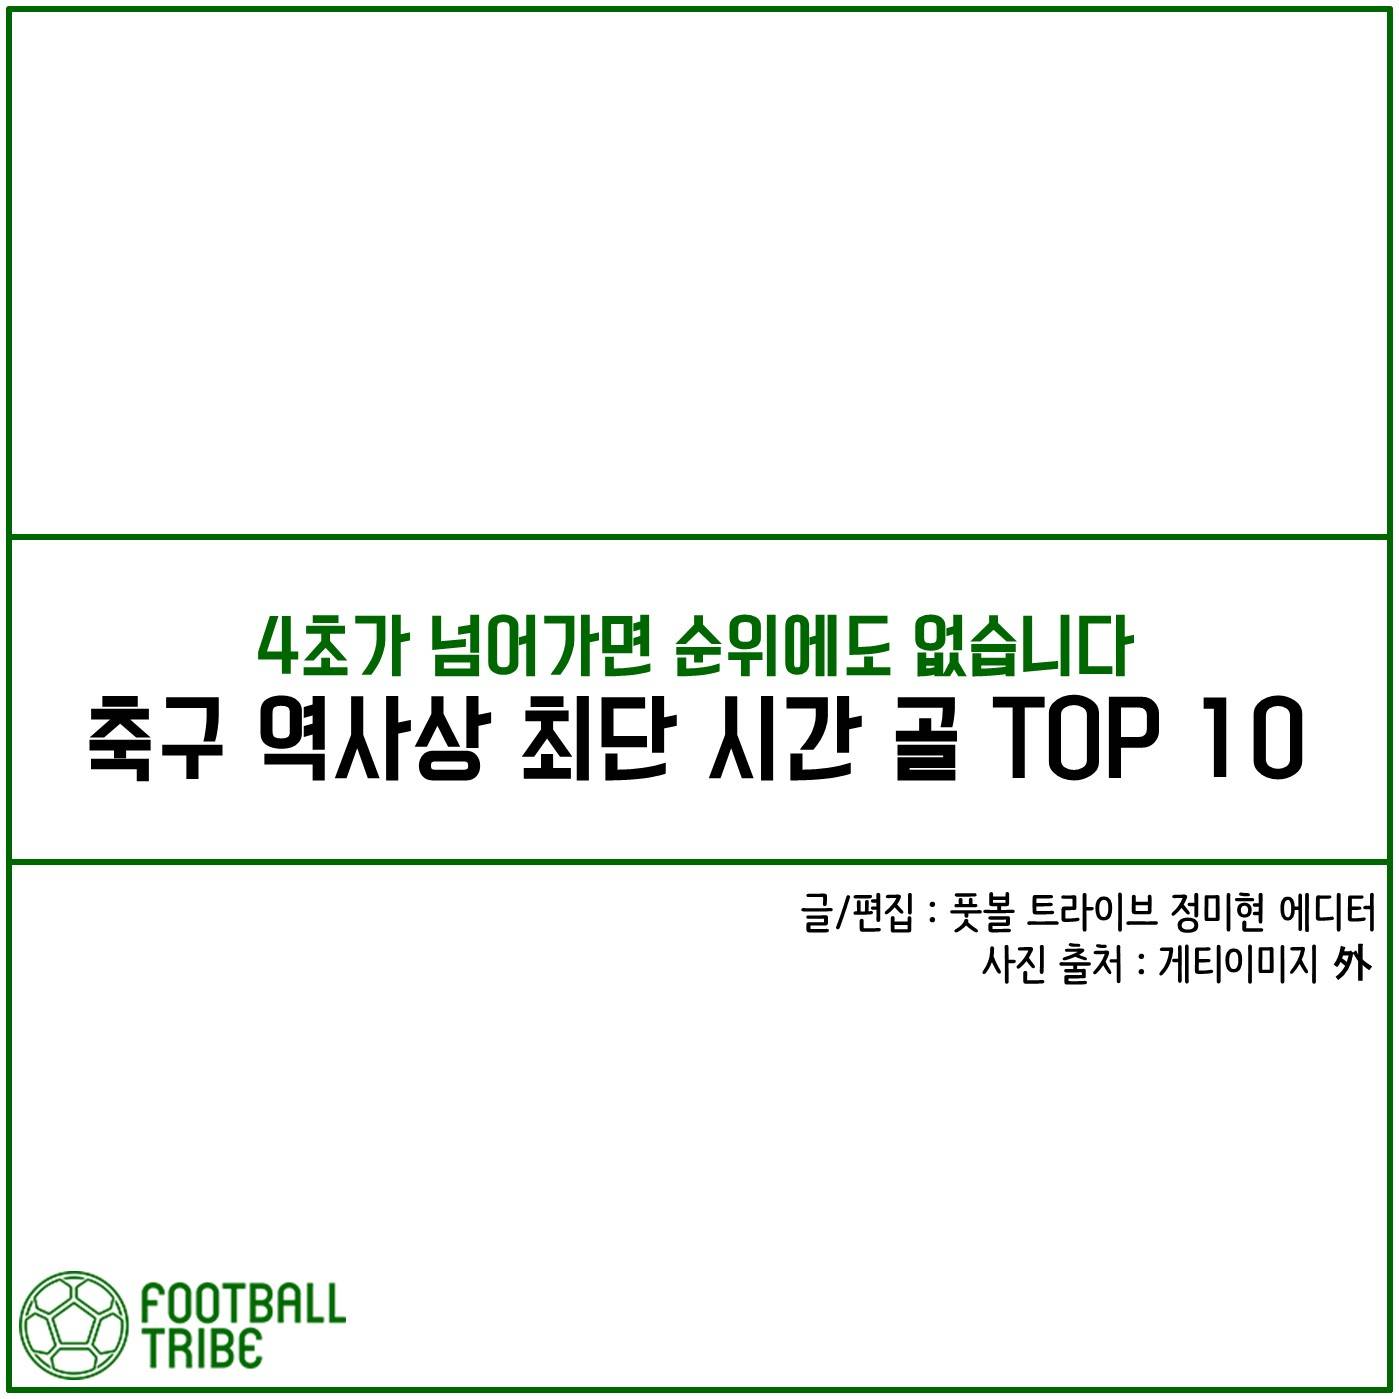 [카드 뉴스] 축구 역사상 최단 시간 골 TOP 10